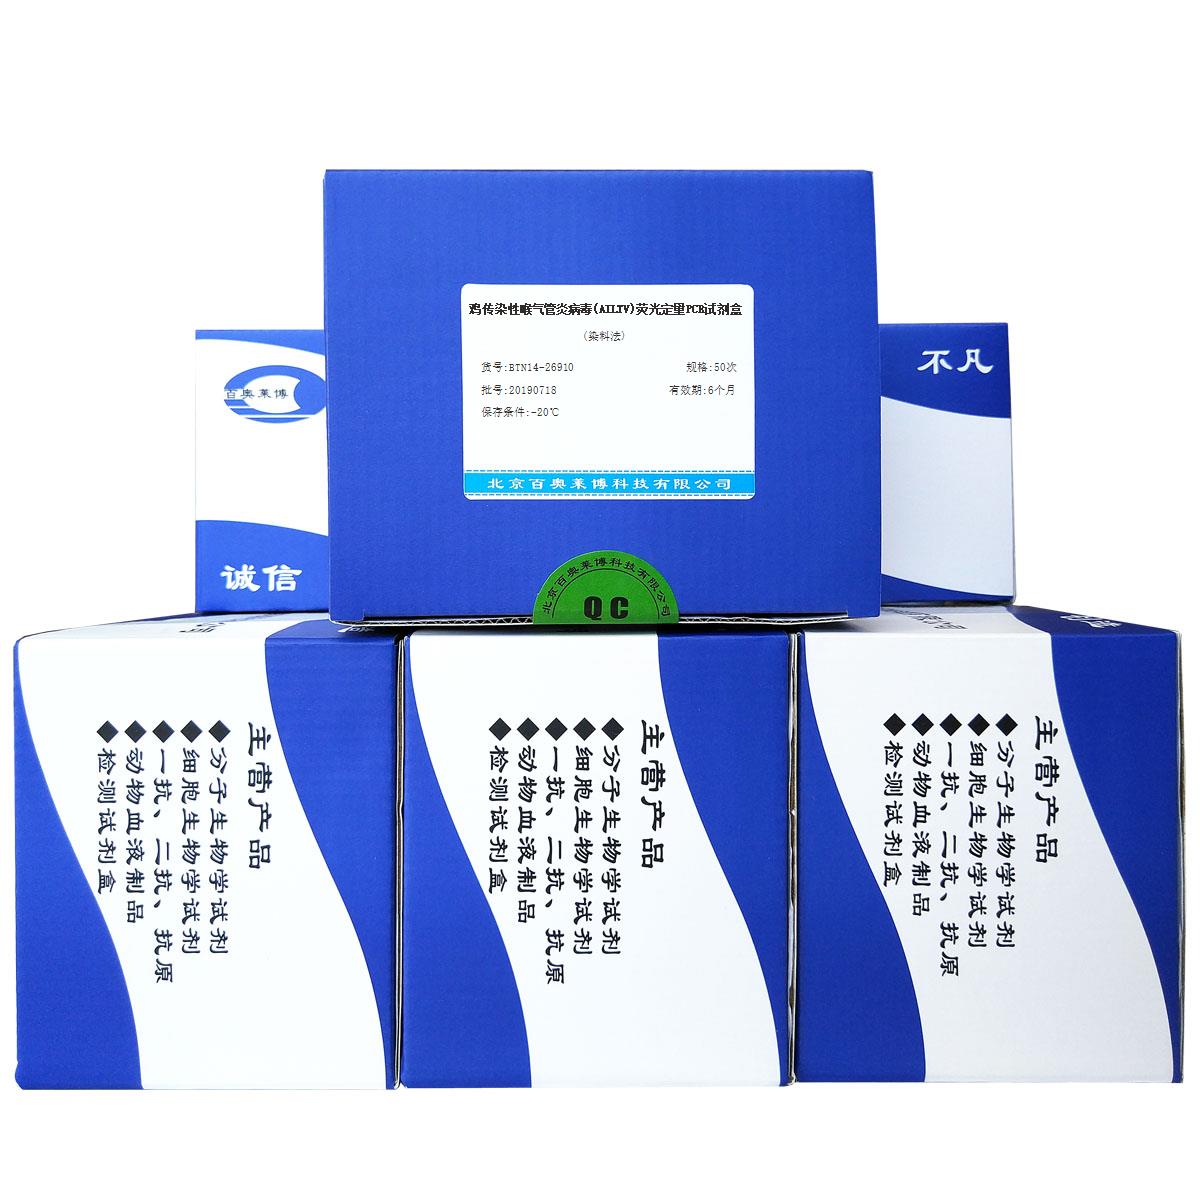 鸡传染性喉气管炎病毒(AILTV)荧光定量PCR试剂盒(染料法)